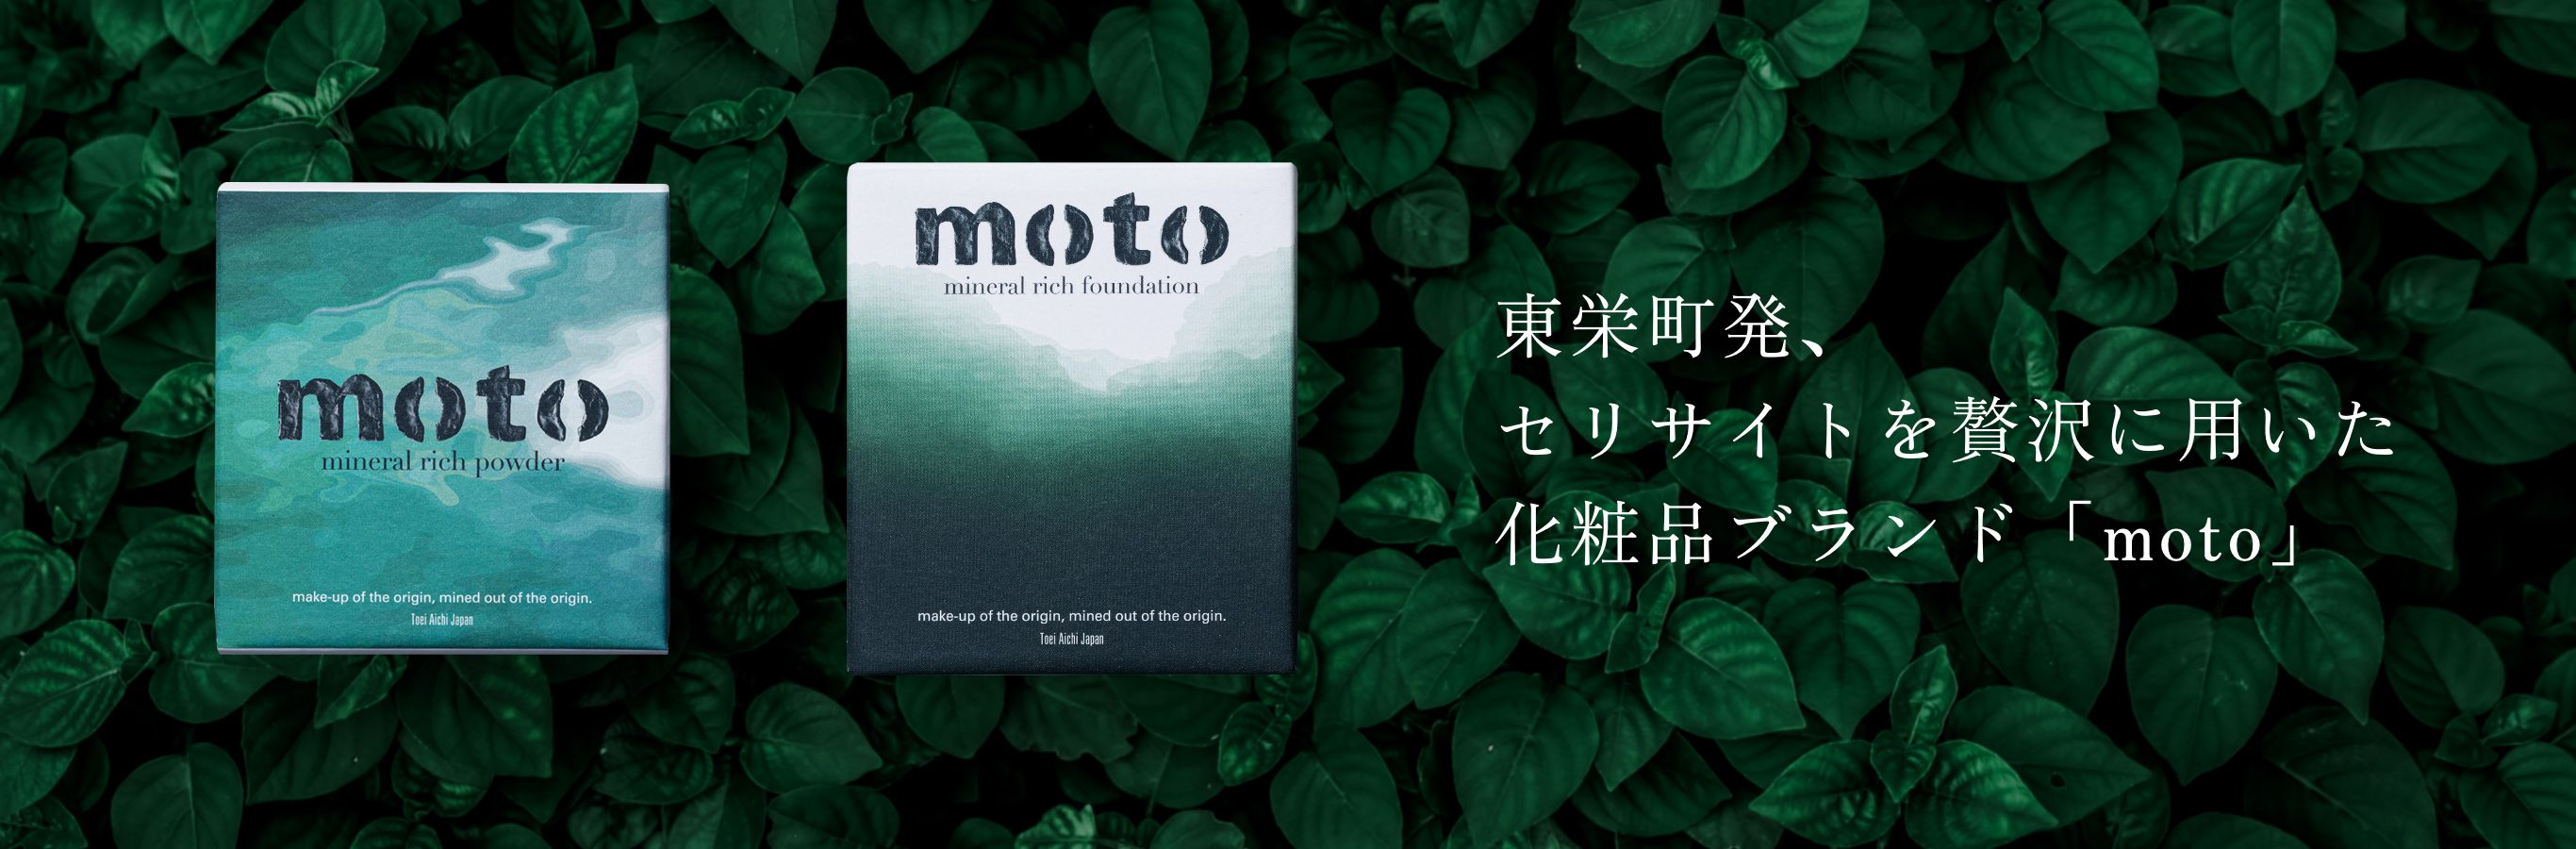 東栄町発、セリサイトを贅沢に用いた化粧品ブランド「moto」